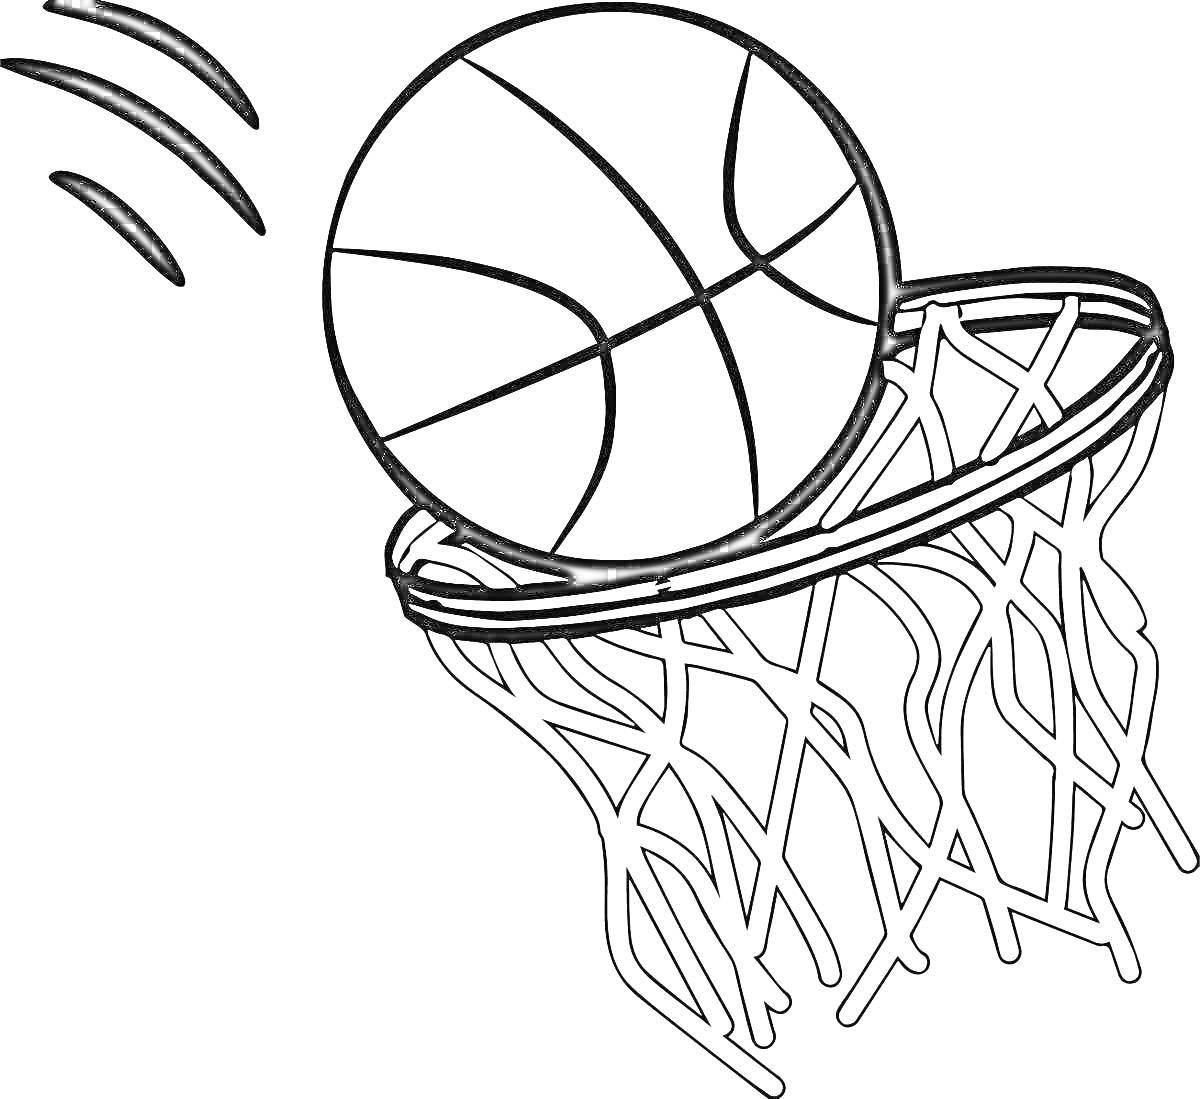 Раскраска Баскетбольный мяч, попадающий в кольцо с сеткой, с нарисованными линиями движения